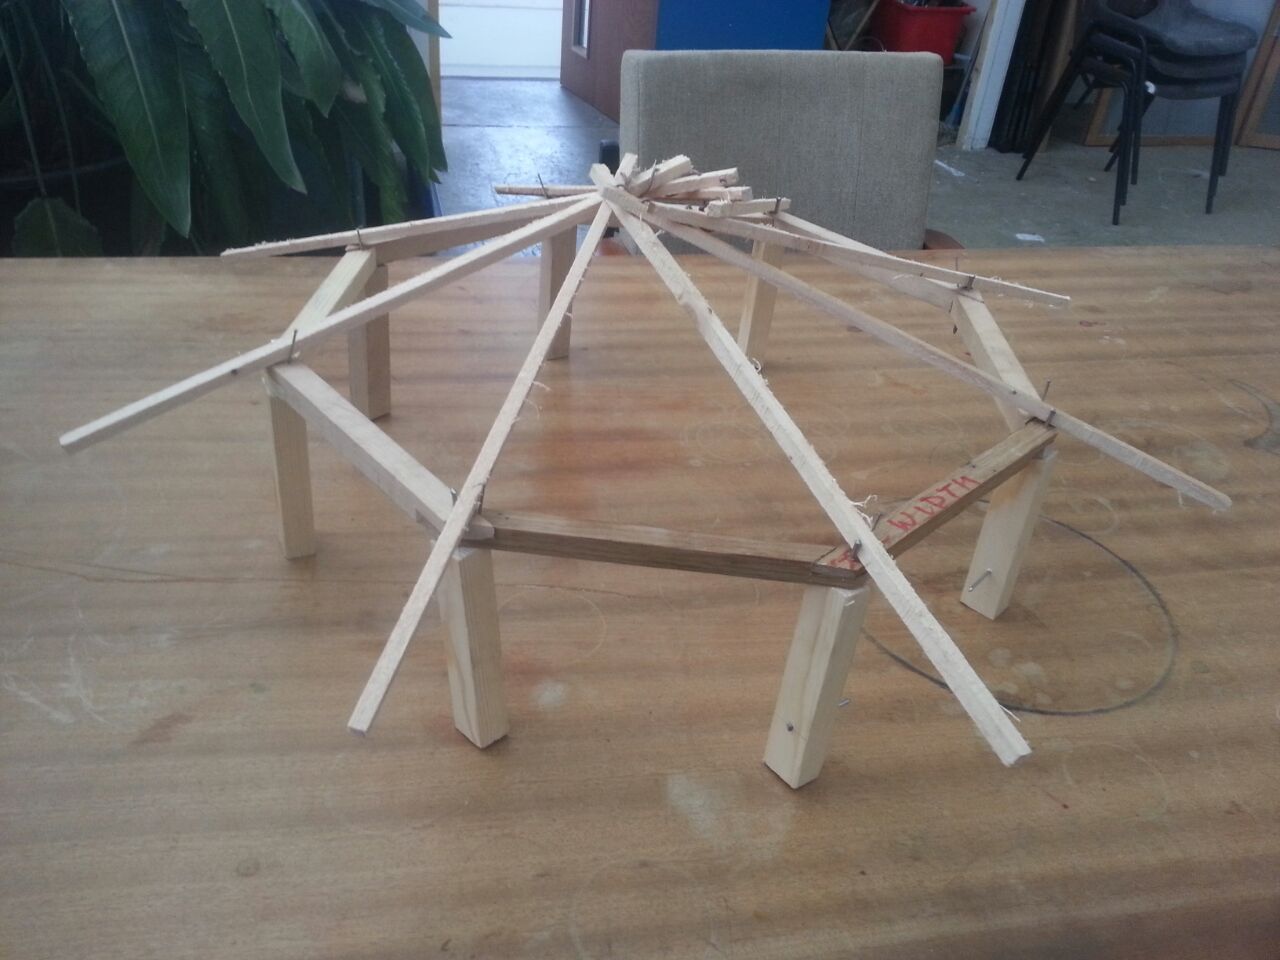 Model Edventure roundhouse